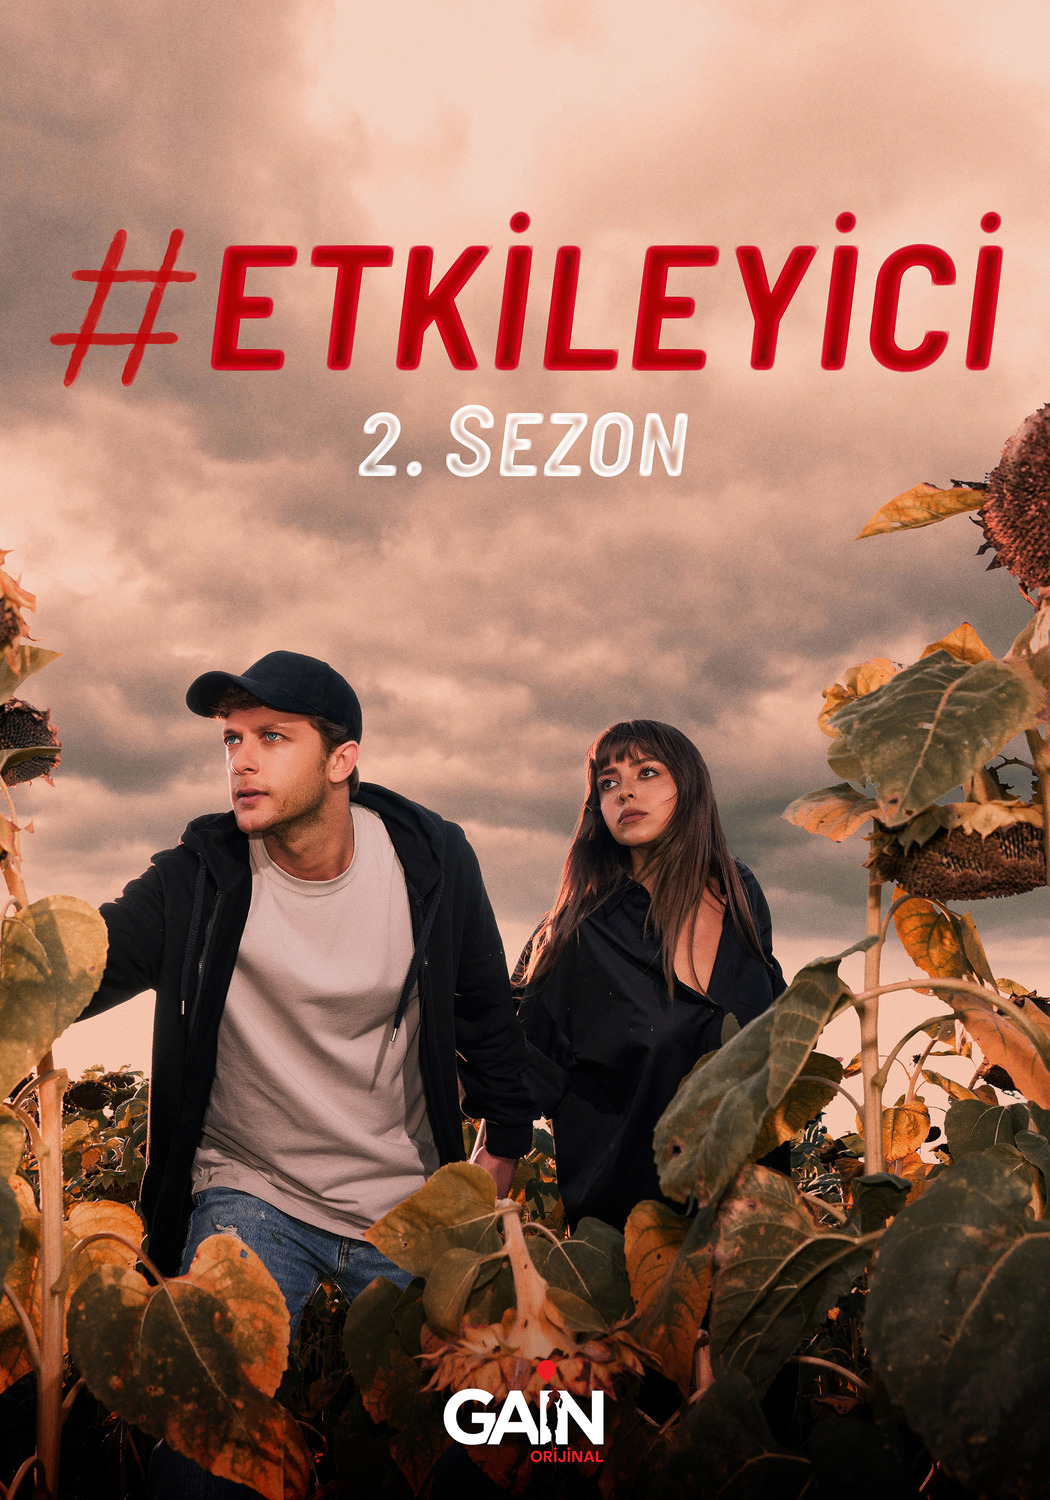 Extra Large TV Poster Image for Etkileyici (#3 of 3)